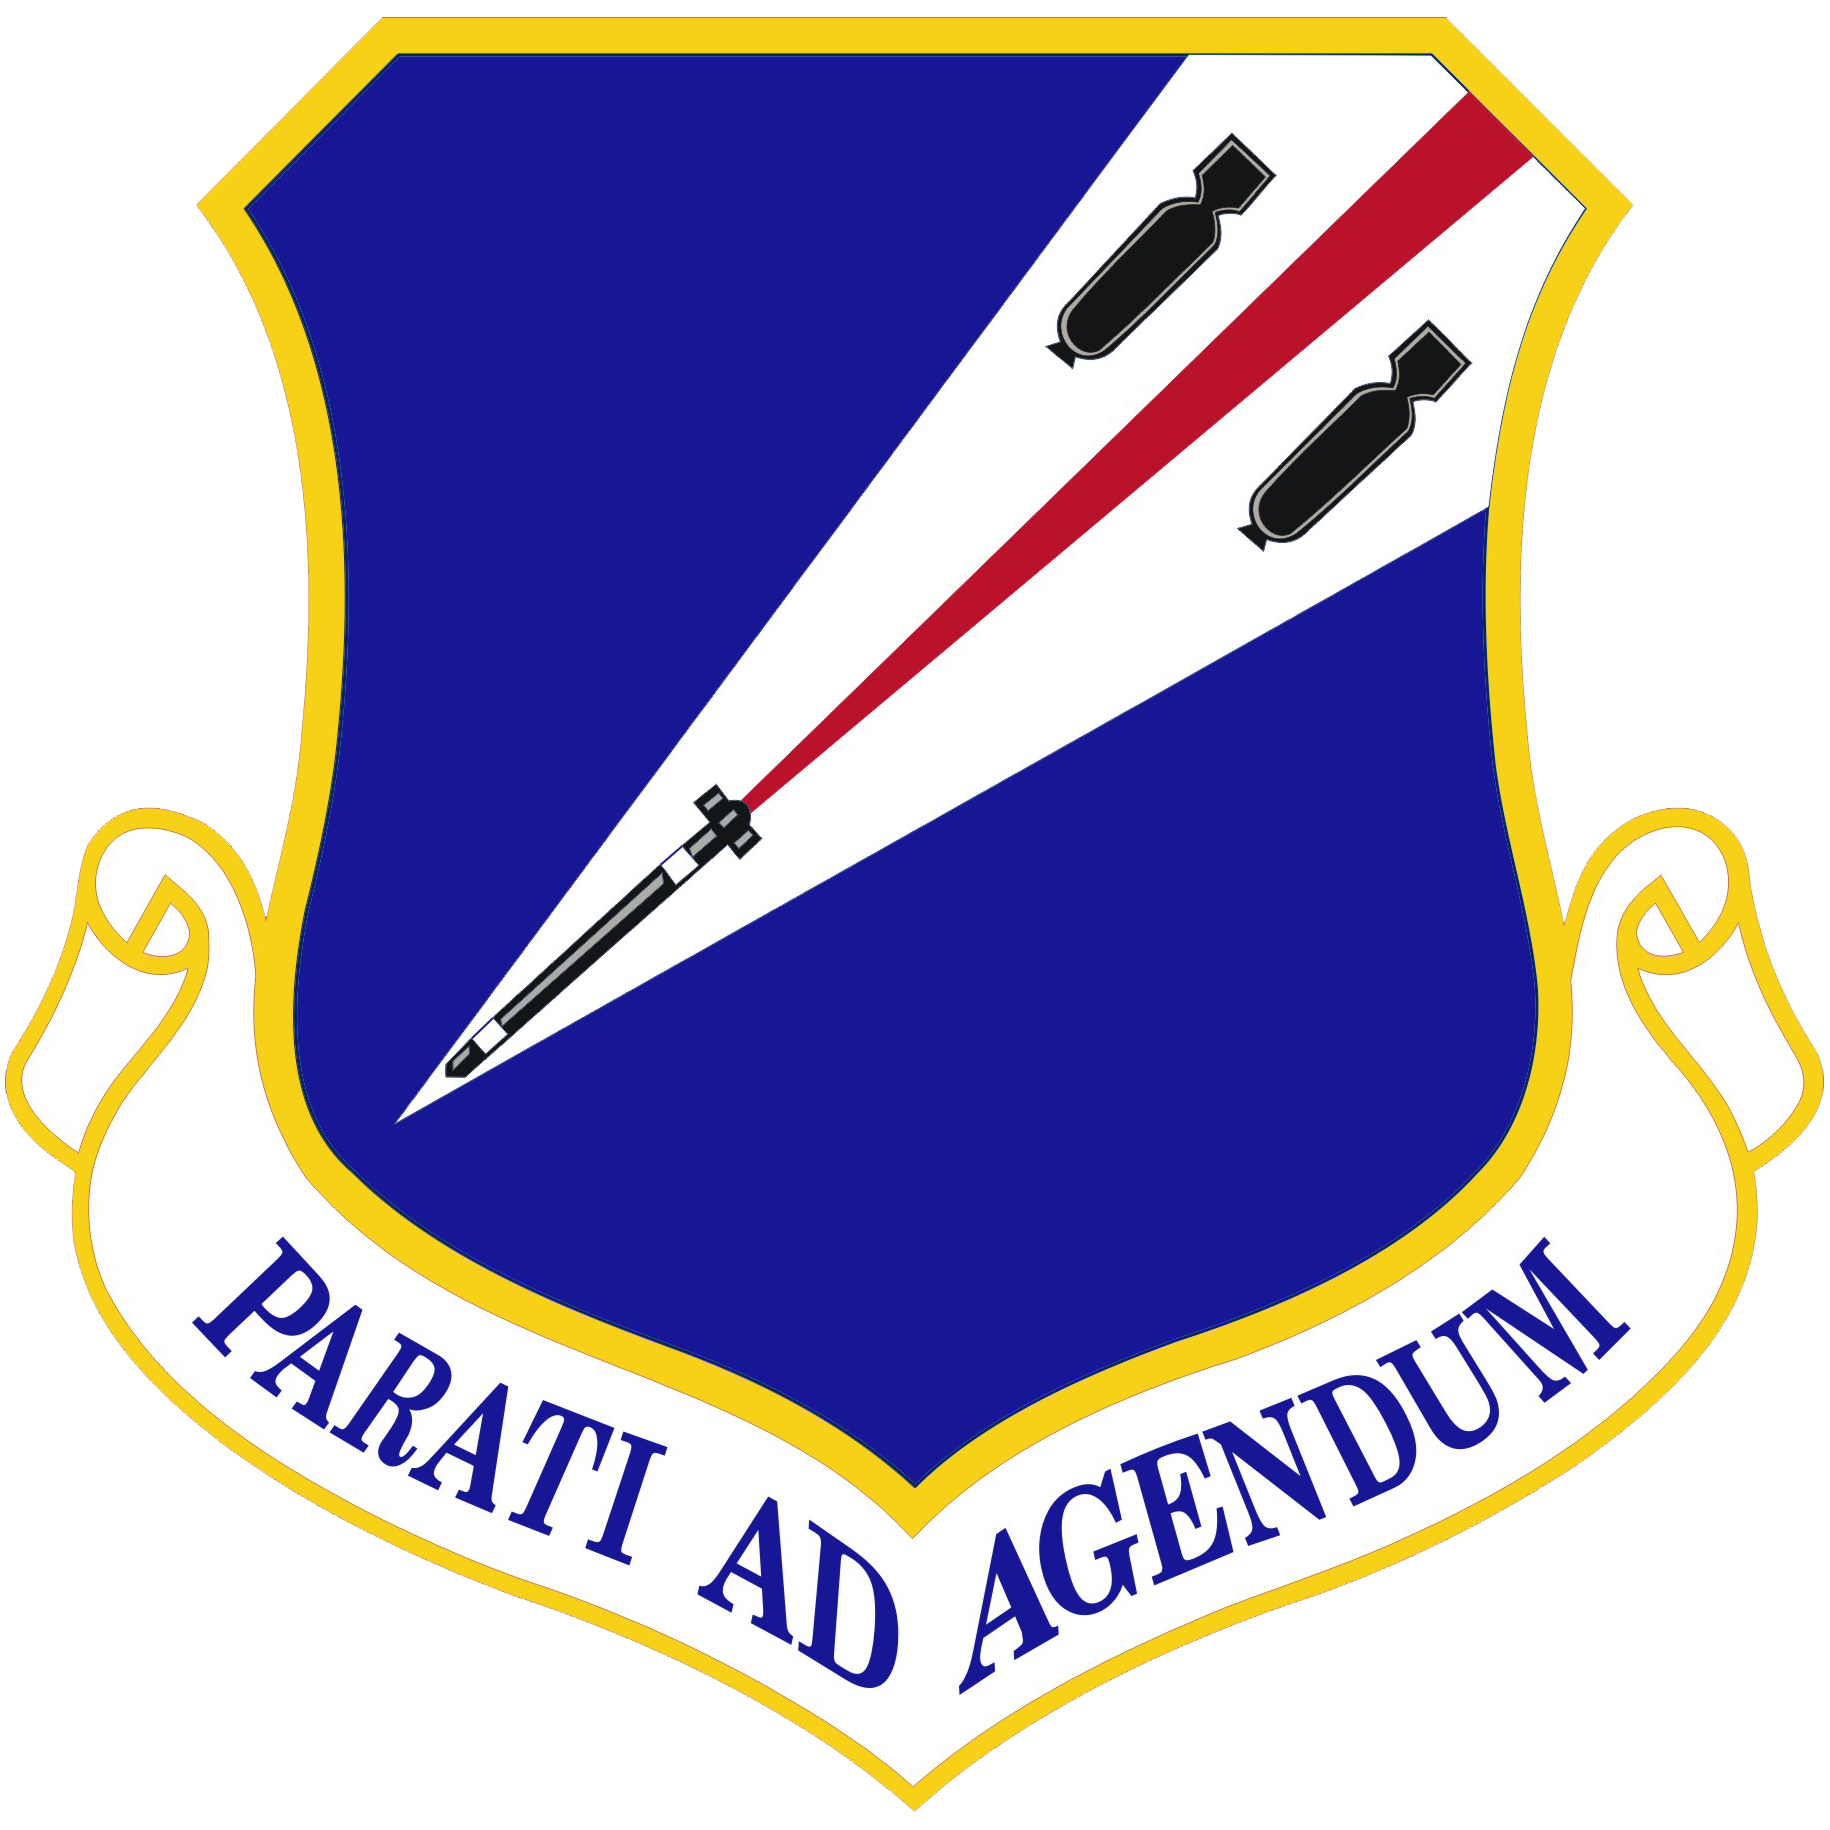 131st Bomb Wing emblem